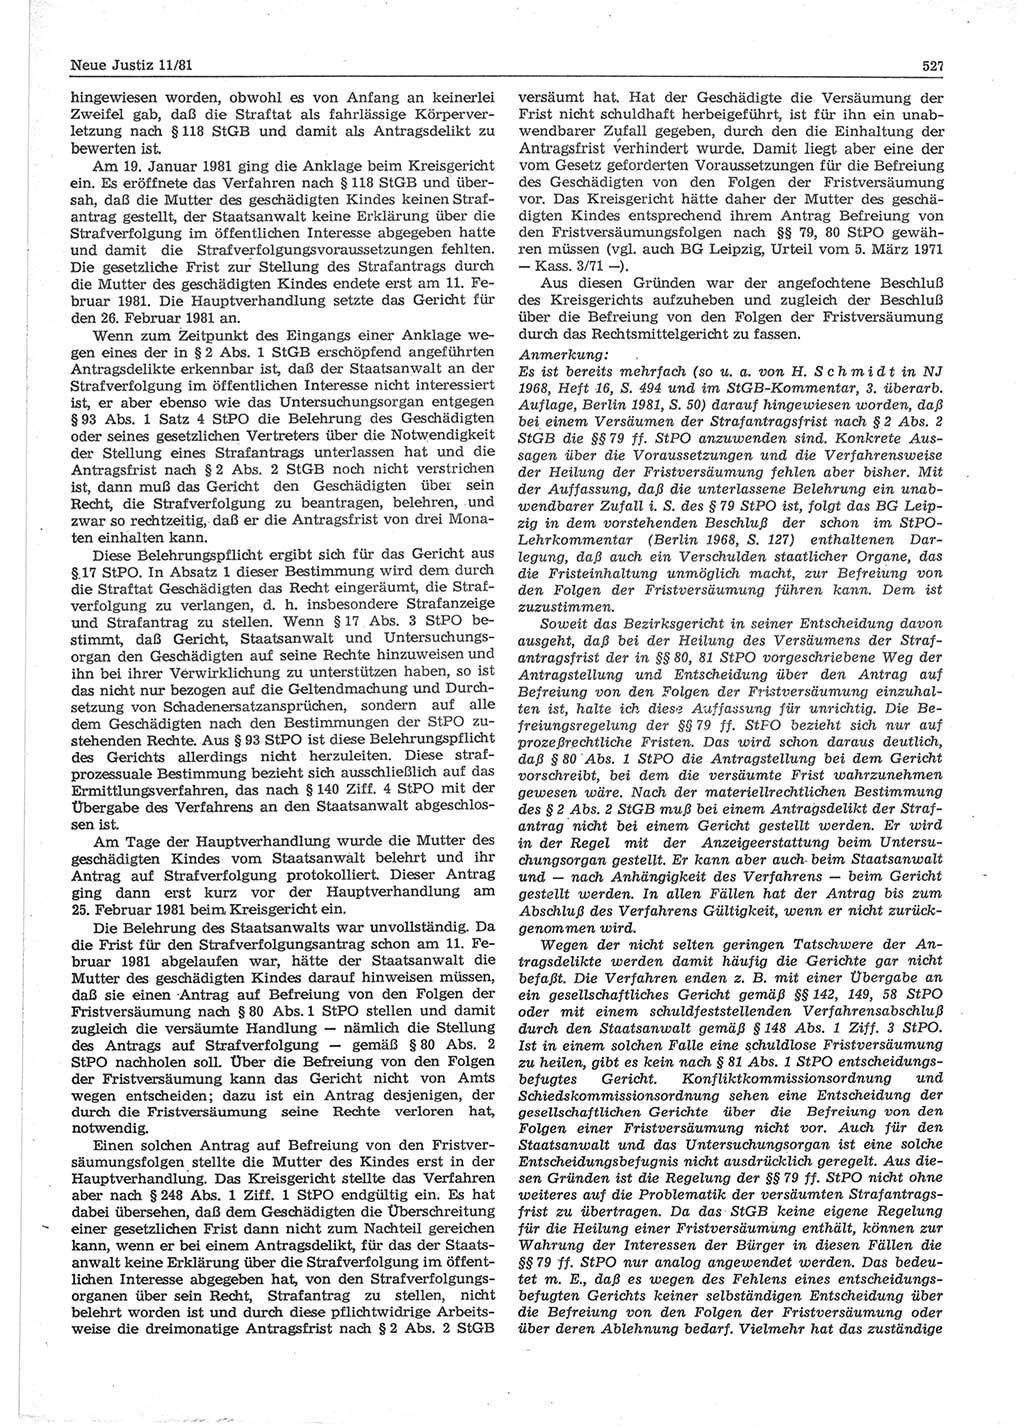 Neue Justiz (NJ), Zeitschrift für sozialistisches Recht und Gesetzlichkeit [Deutsche Demokratische Republik (DDR)], 35. Jahrgang 1981, Seite 527 (NJ DDR 1981, S. 527)